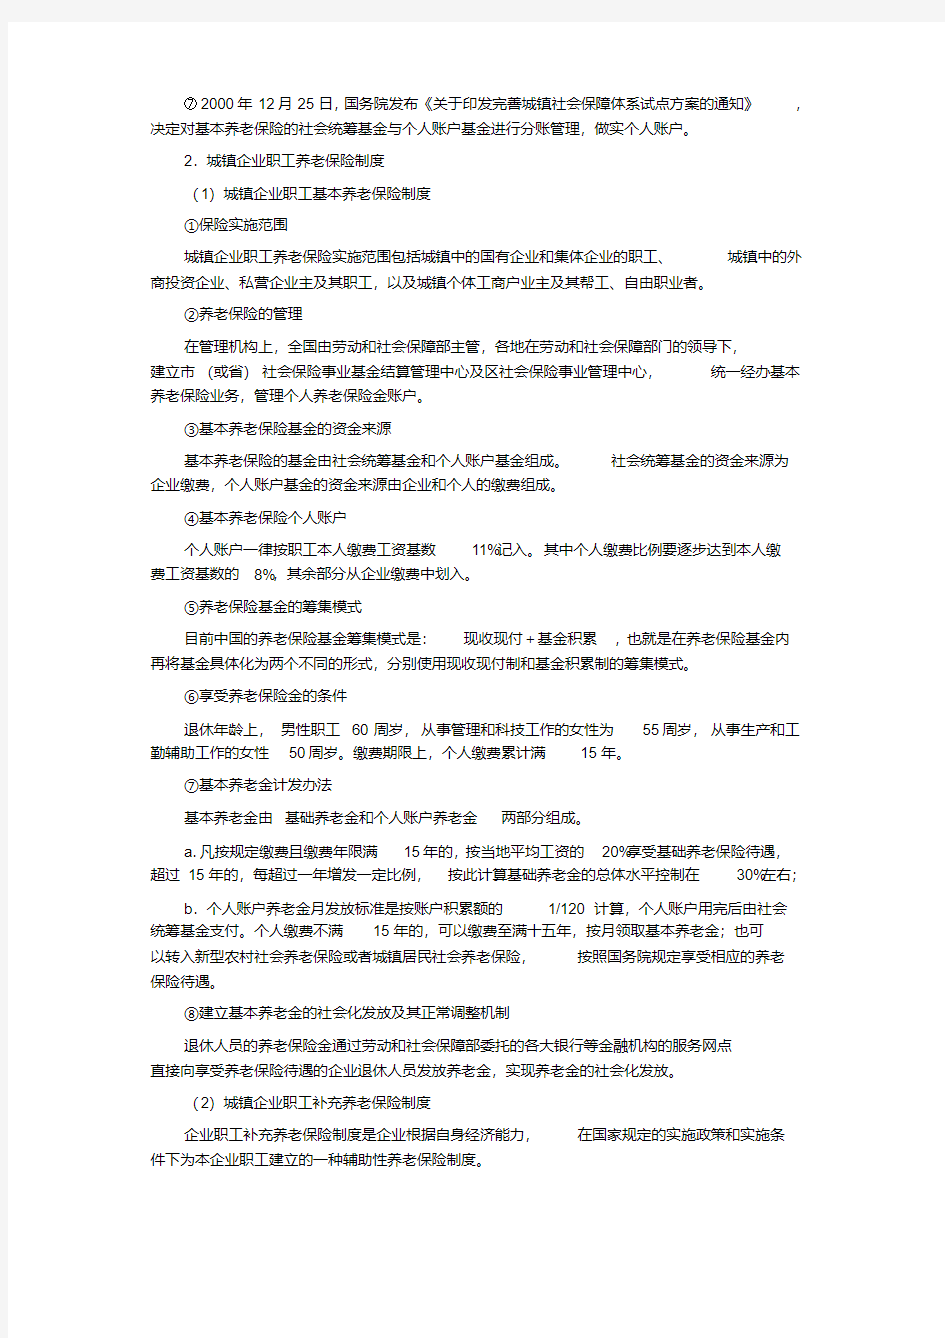 中国养老保险制度的历史沿革与改革现状-精选.pdf